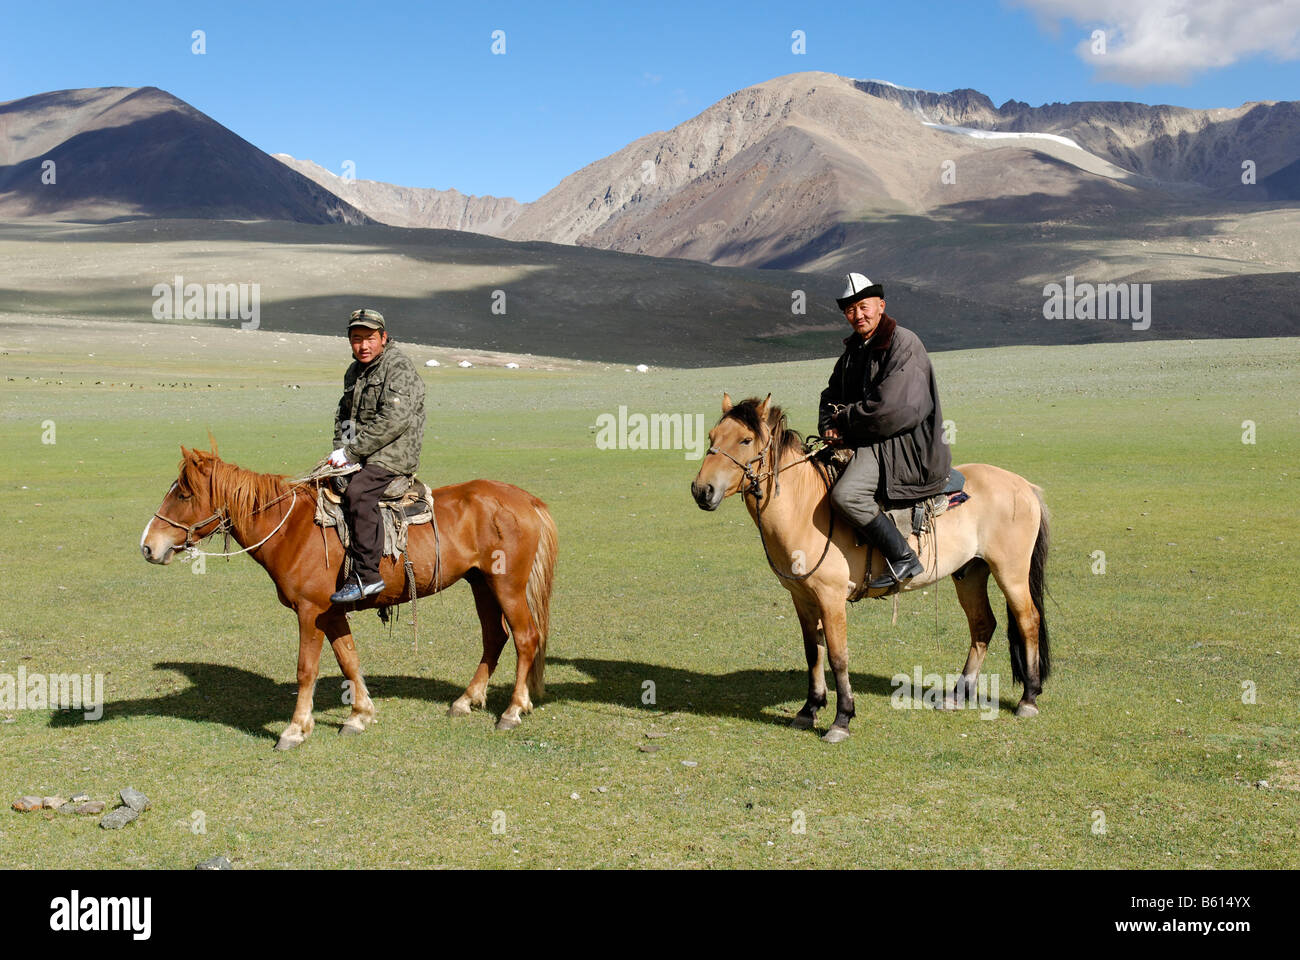 Les cavaliers mongols, kazakh avec les chevaux, l'Altaï, le Kazakhstan, la Mongolie, l'Asie Banque D'Images